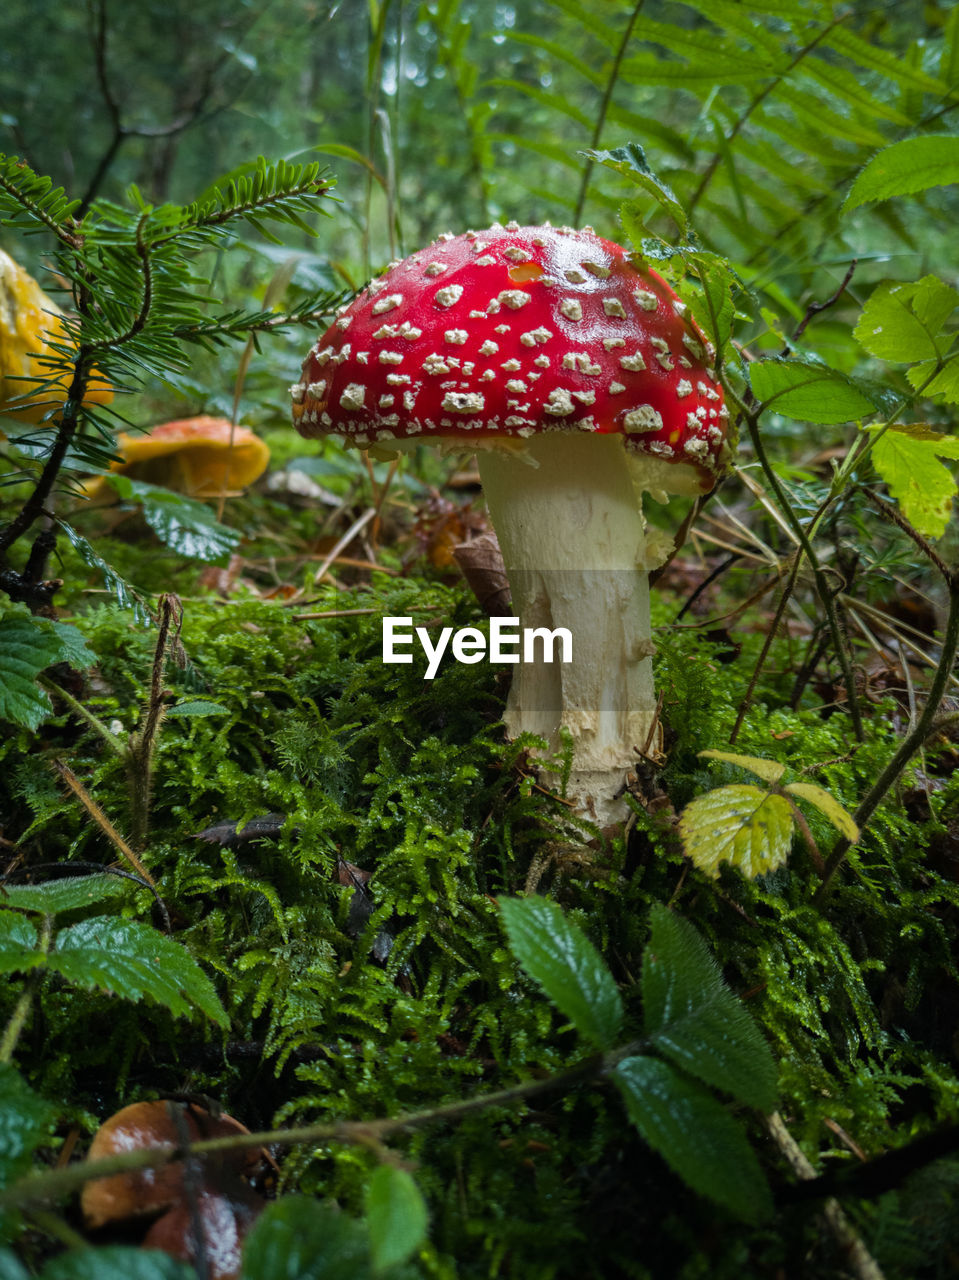 Close-up of toadstool mushroom